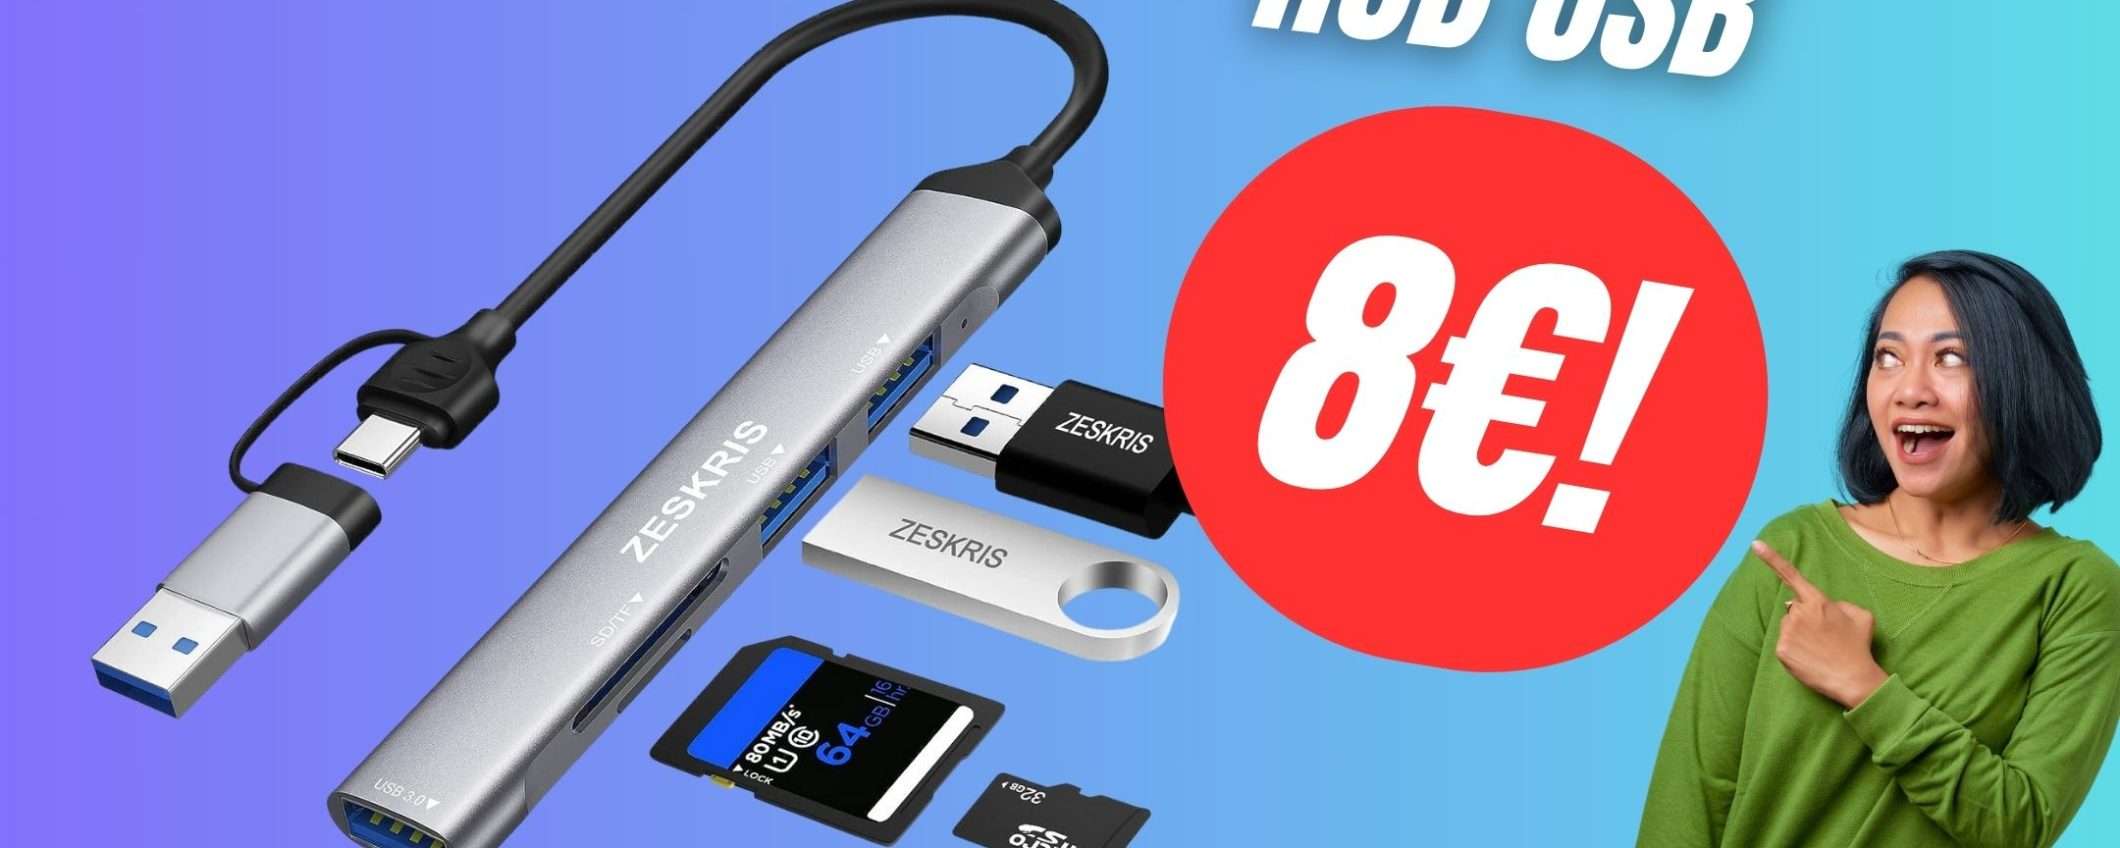 Con questo Hub USB 5 in 1 potrai collegare qualsiasi cosa al tuo PC o Smartphone! (a soli 8€)